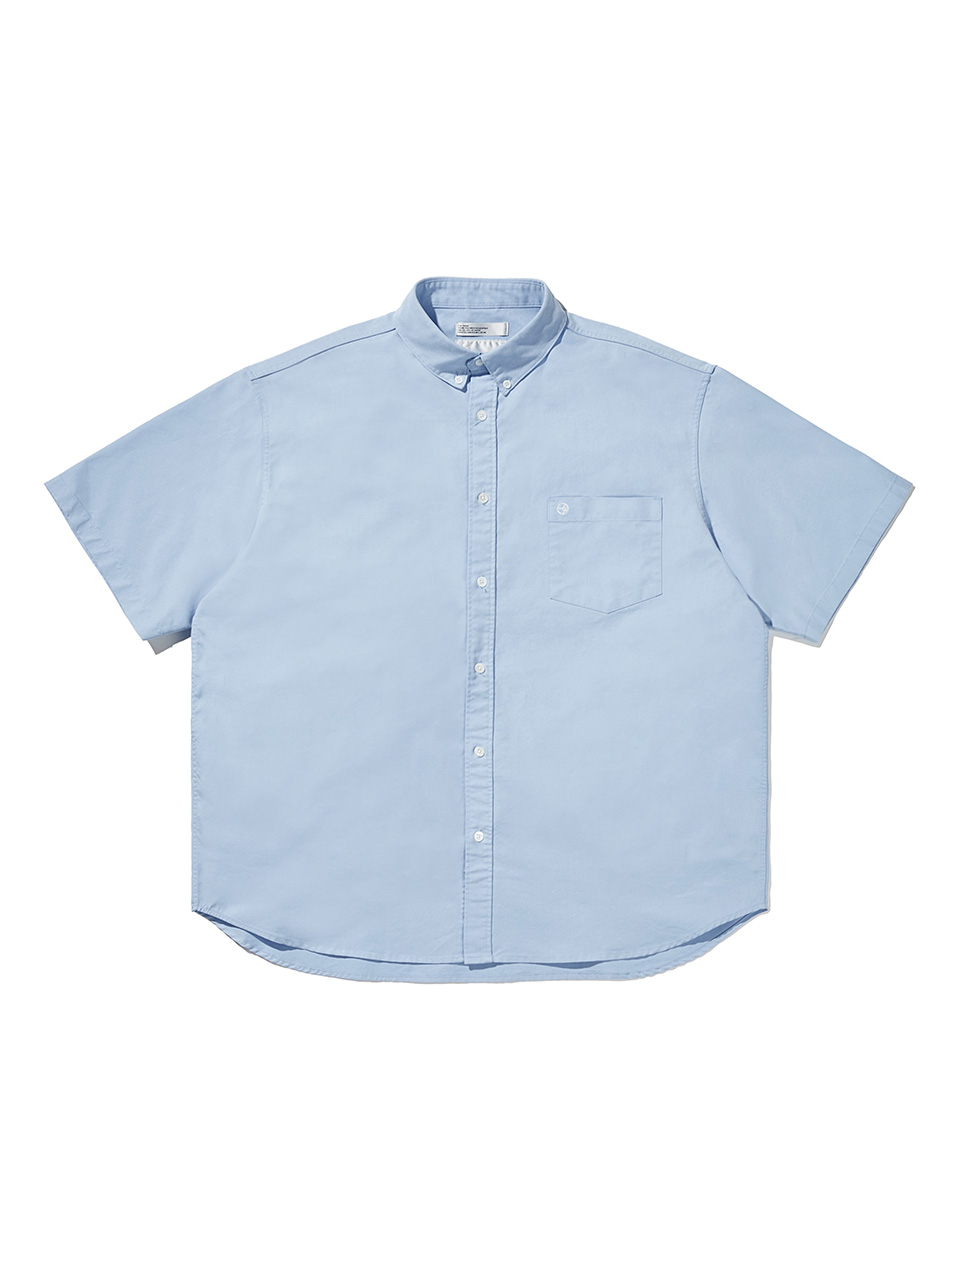 SOUNDSLIFE - [Airocool] Back Loop Short Slevve Oxford Shirt Sky Blue